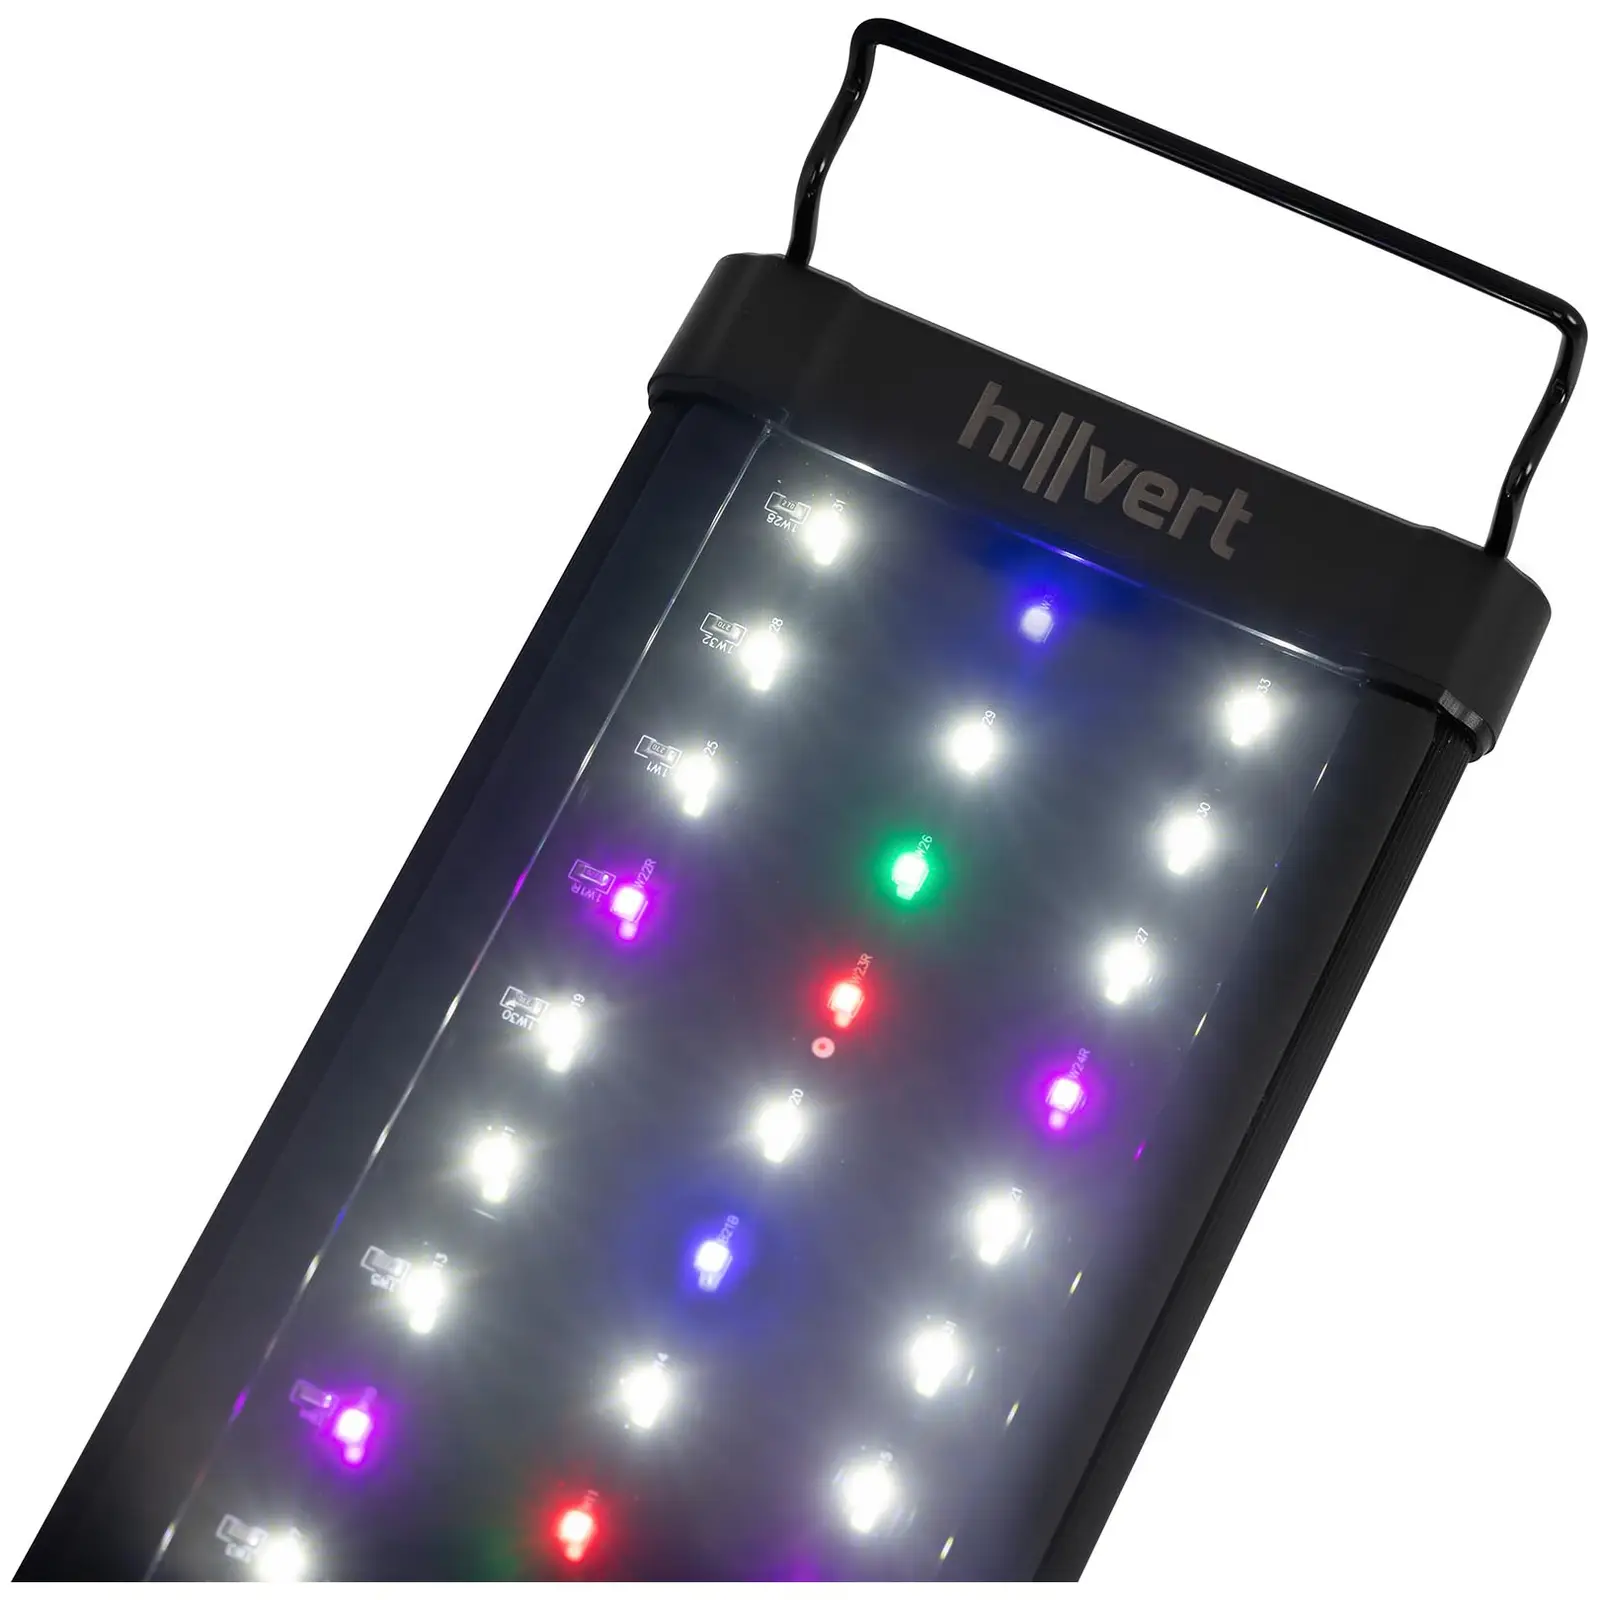 LED svjetlo za akvarij - 78 LED diode - 18 W - 56 cm